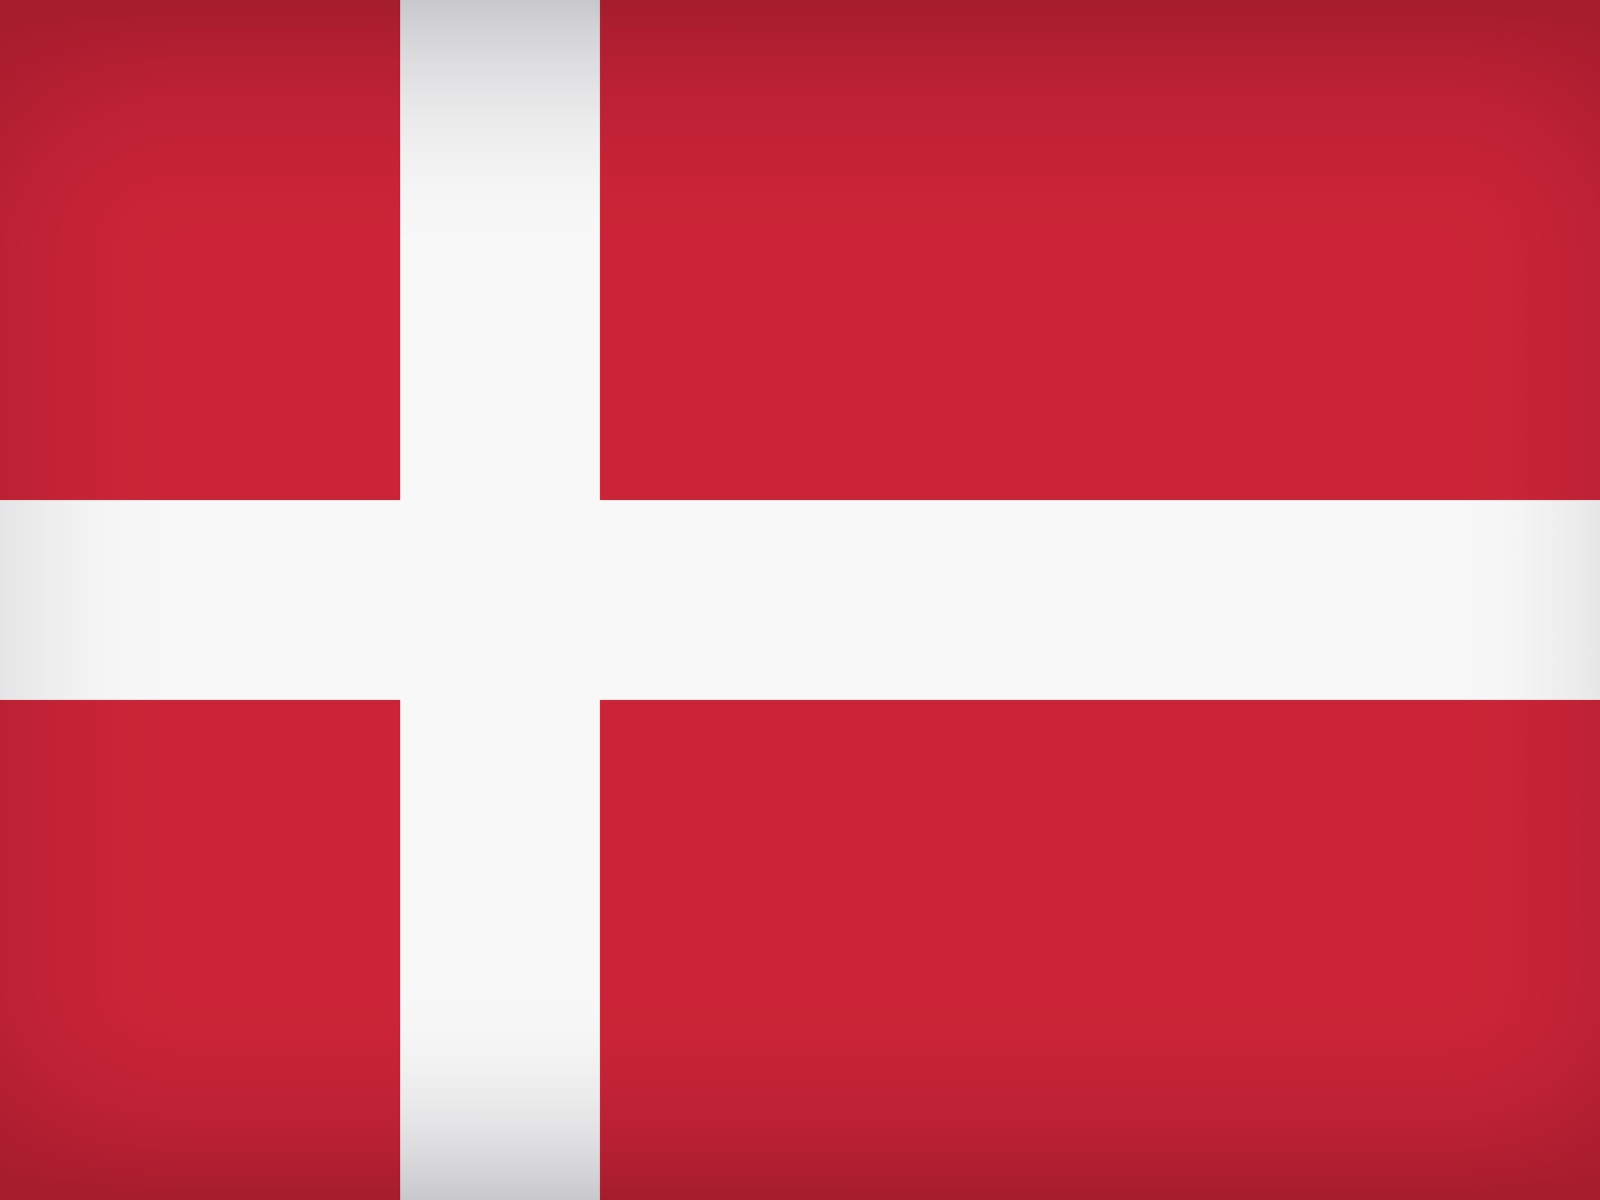 Red - white flag of Denmark